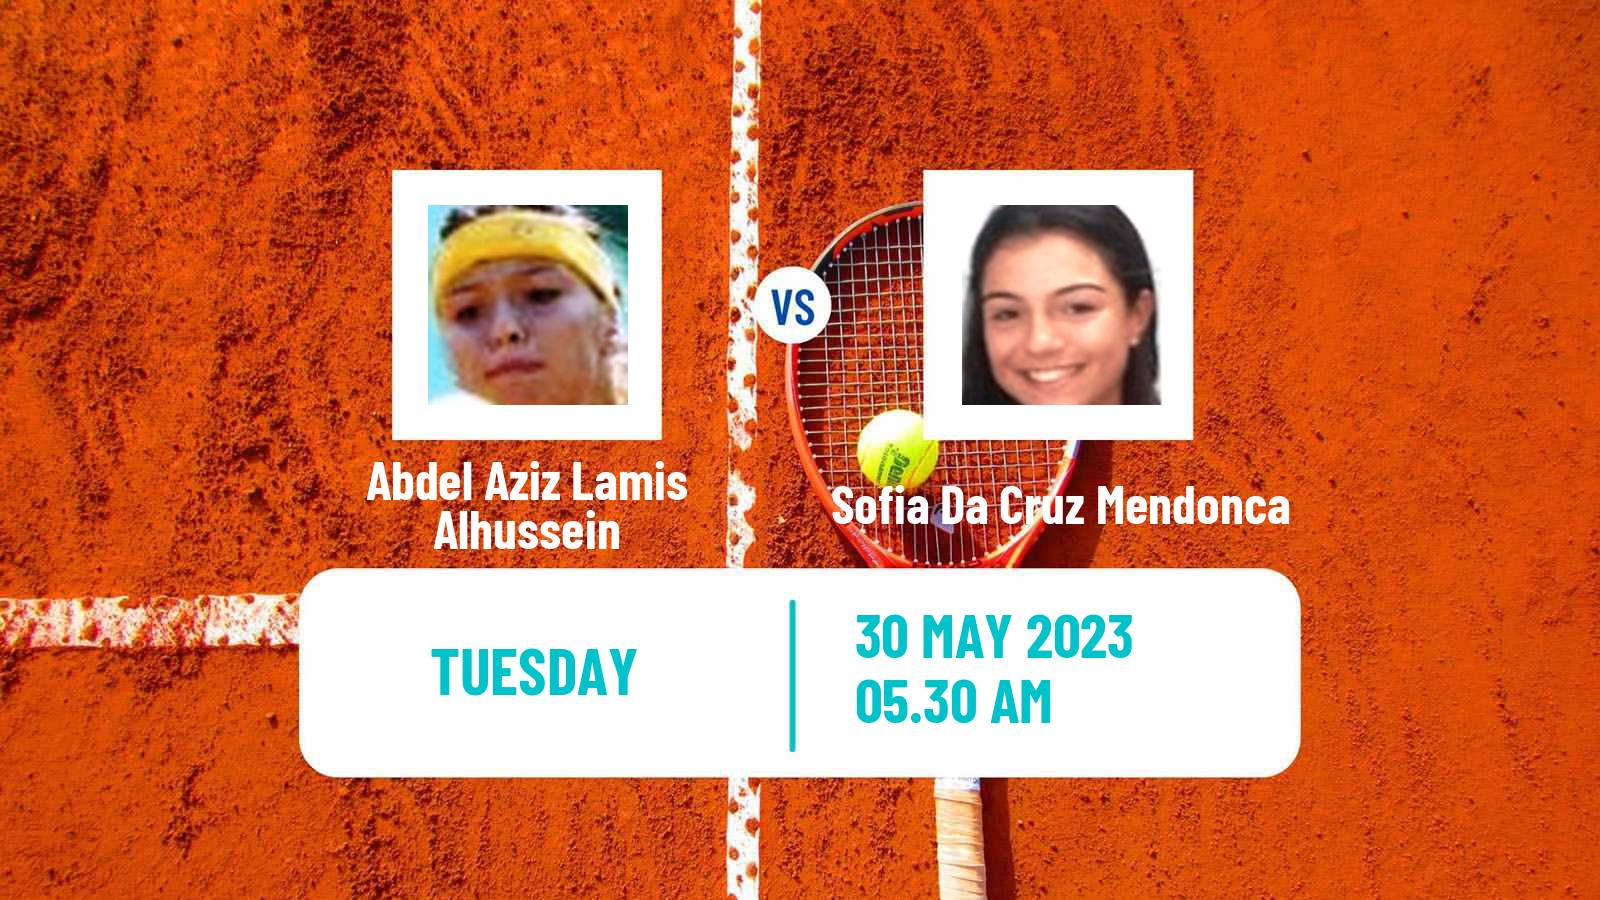 Tennis ITF W15 Monastir 51 Women Abdel Aziz Lamis Alhussein - Sofia Da Cruz Mendonca